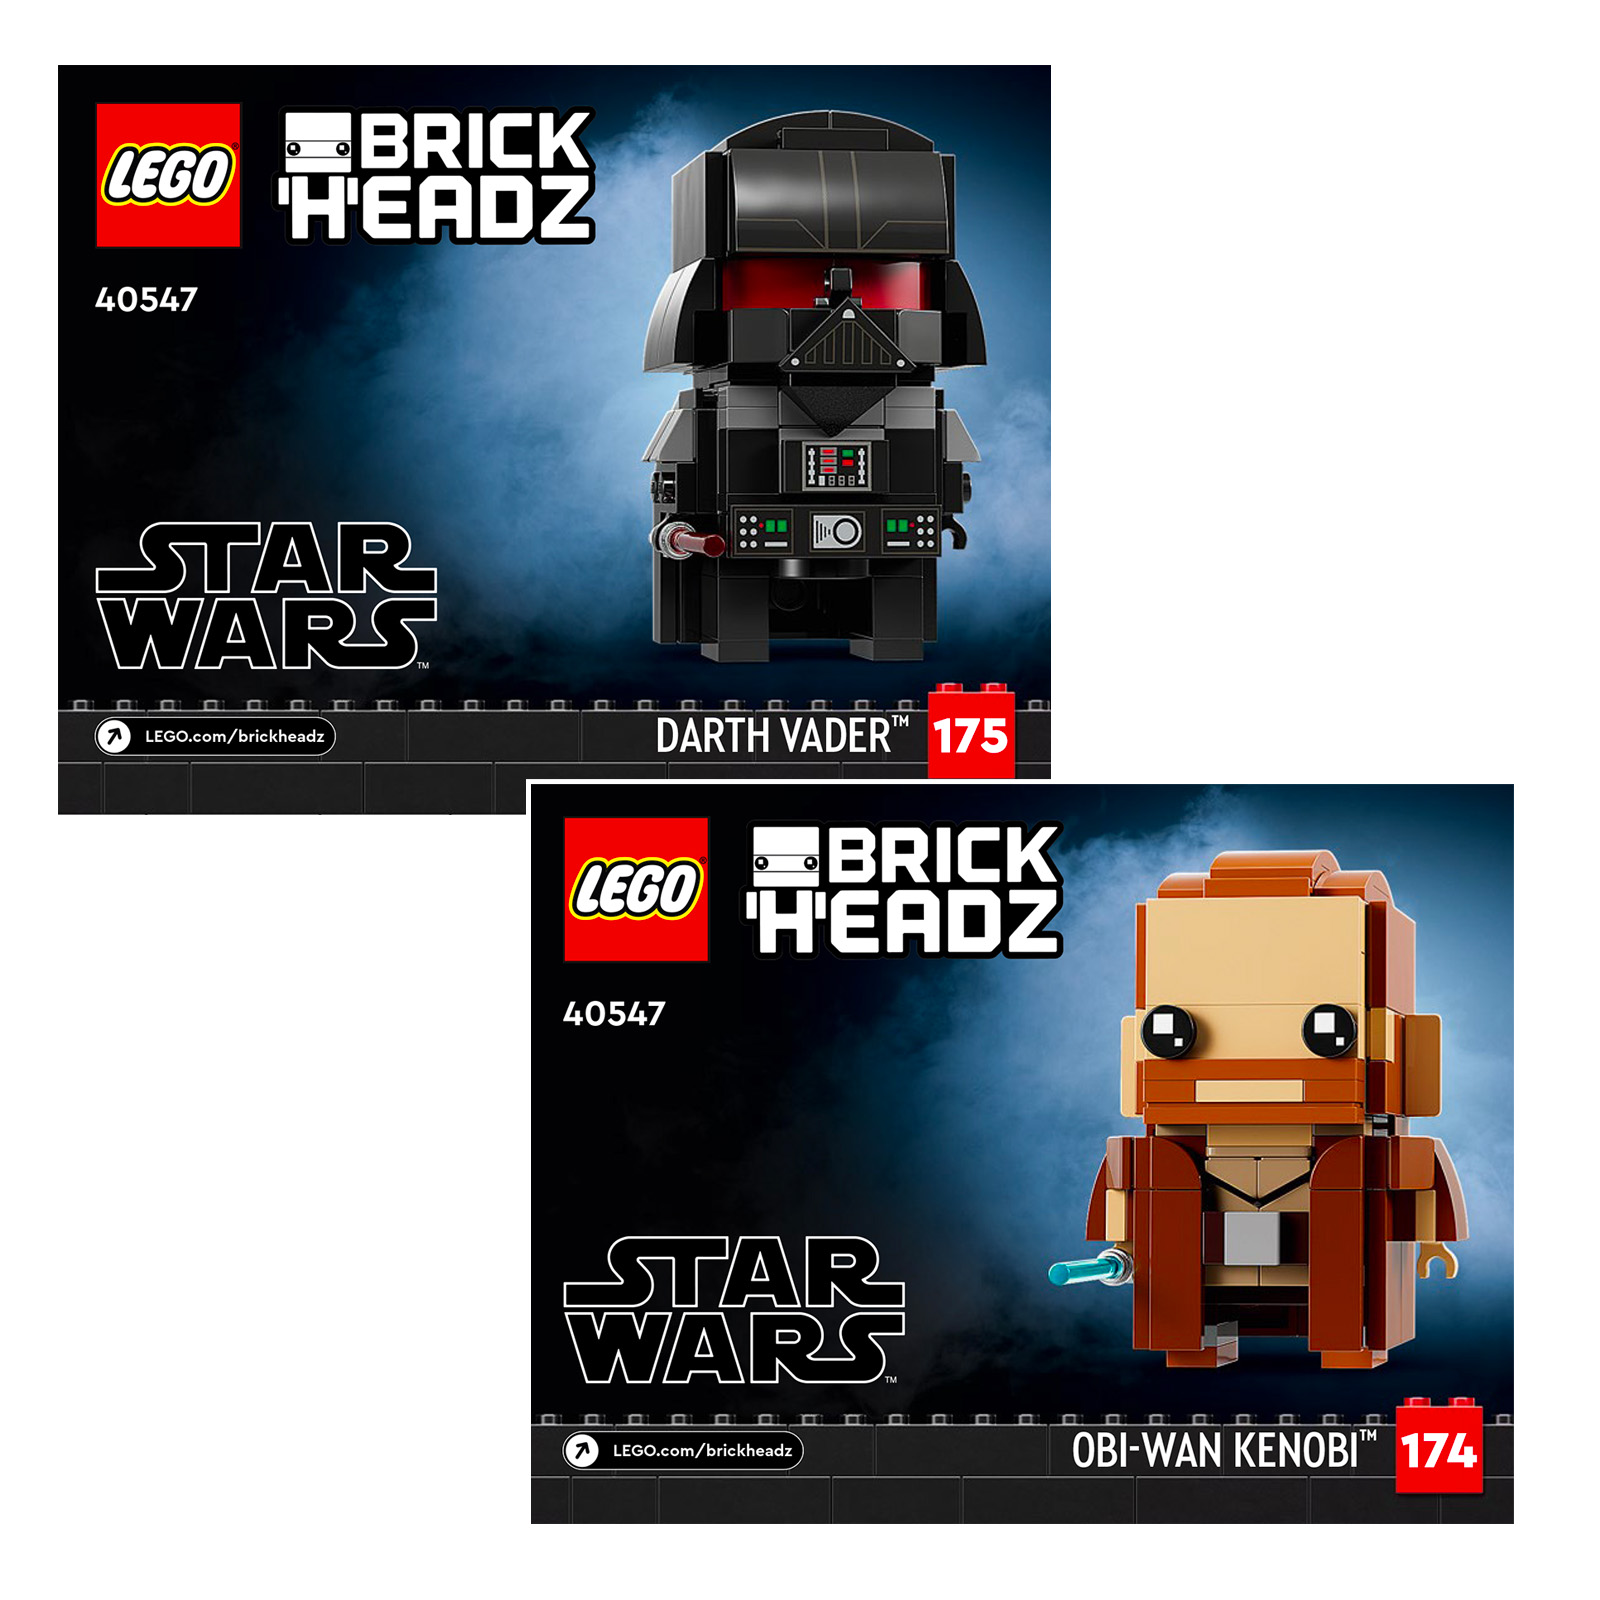 LEGO Star Wars BrickHeadz 40547 Obi-Wan Kenobi és Darth Vader: Első látványelemek